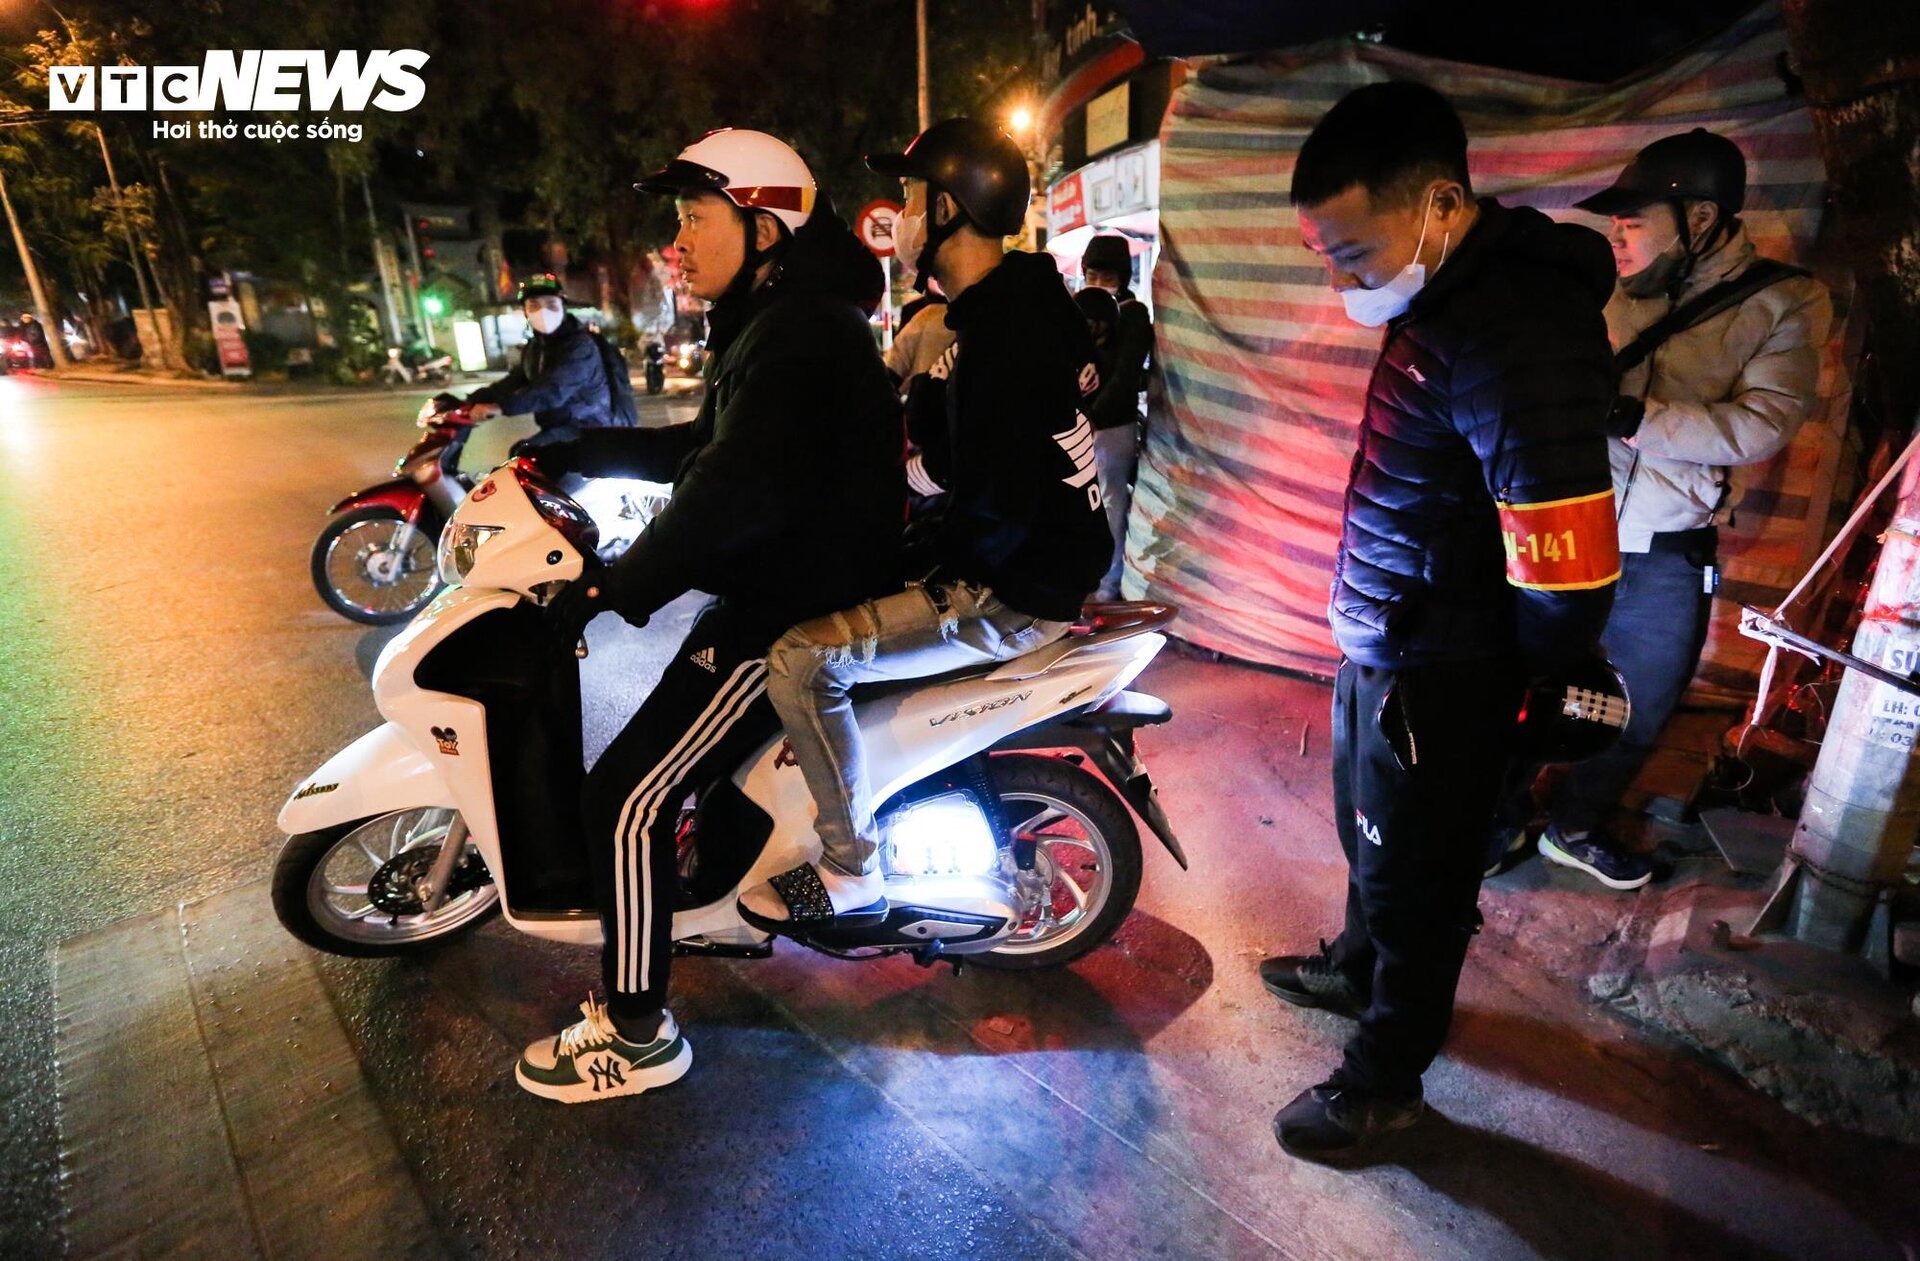 Cảnh sát 141 hóa trang đón lõng các 'quái xế' độ xe, nẹt pô trên phố Hà Nội - Ảnh 13.